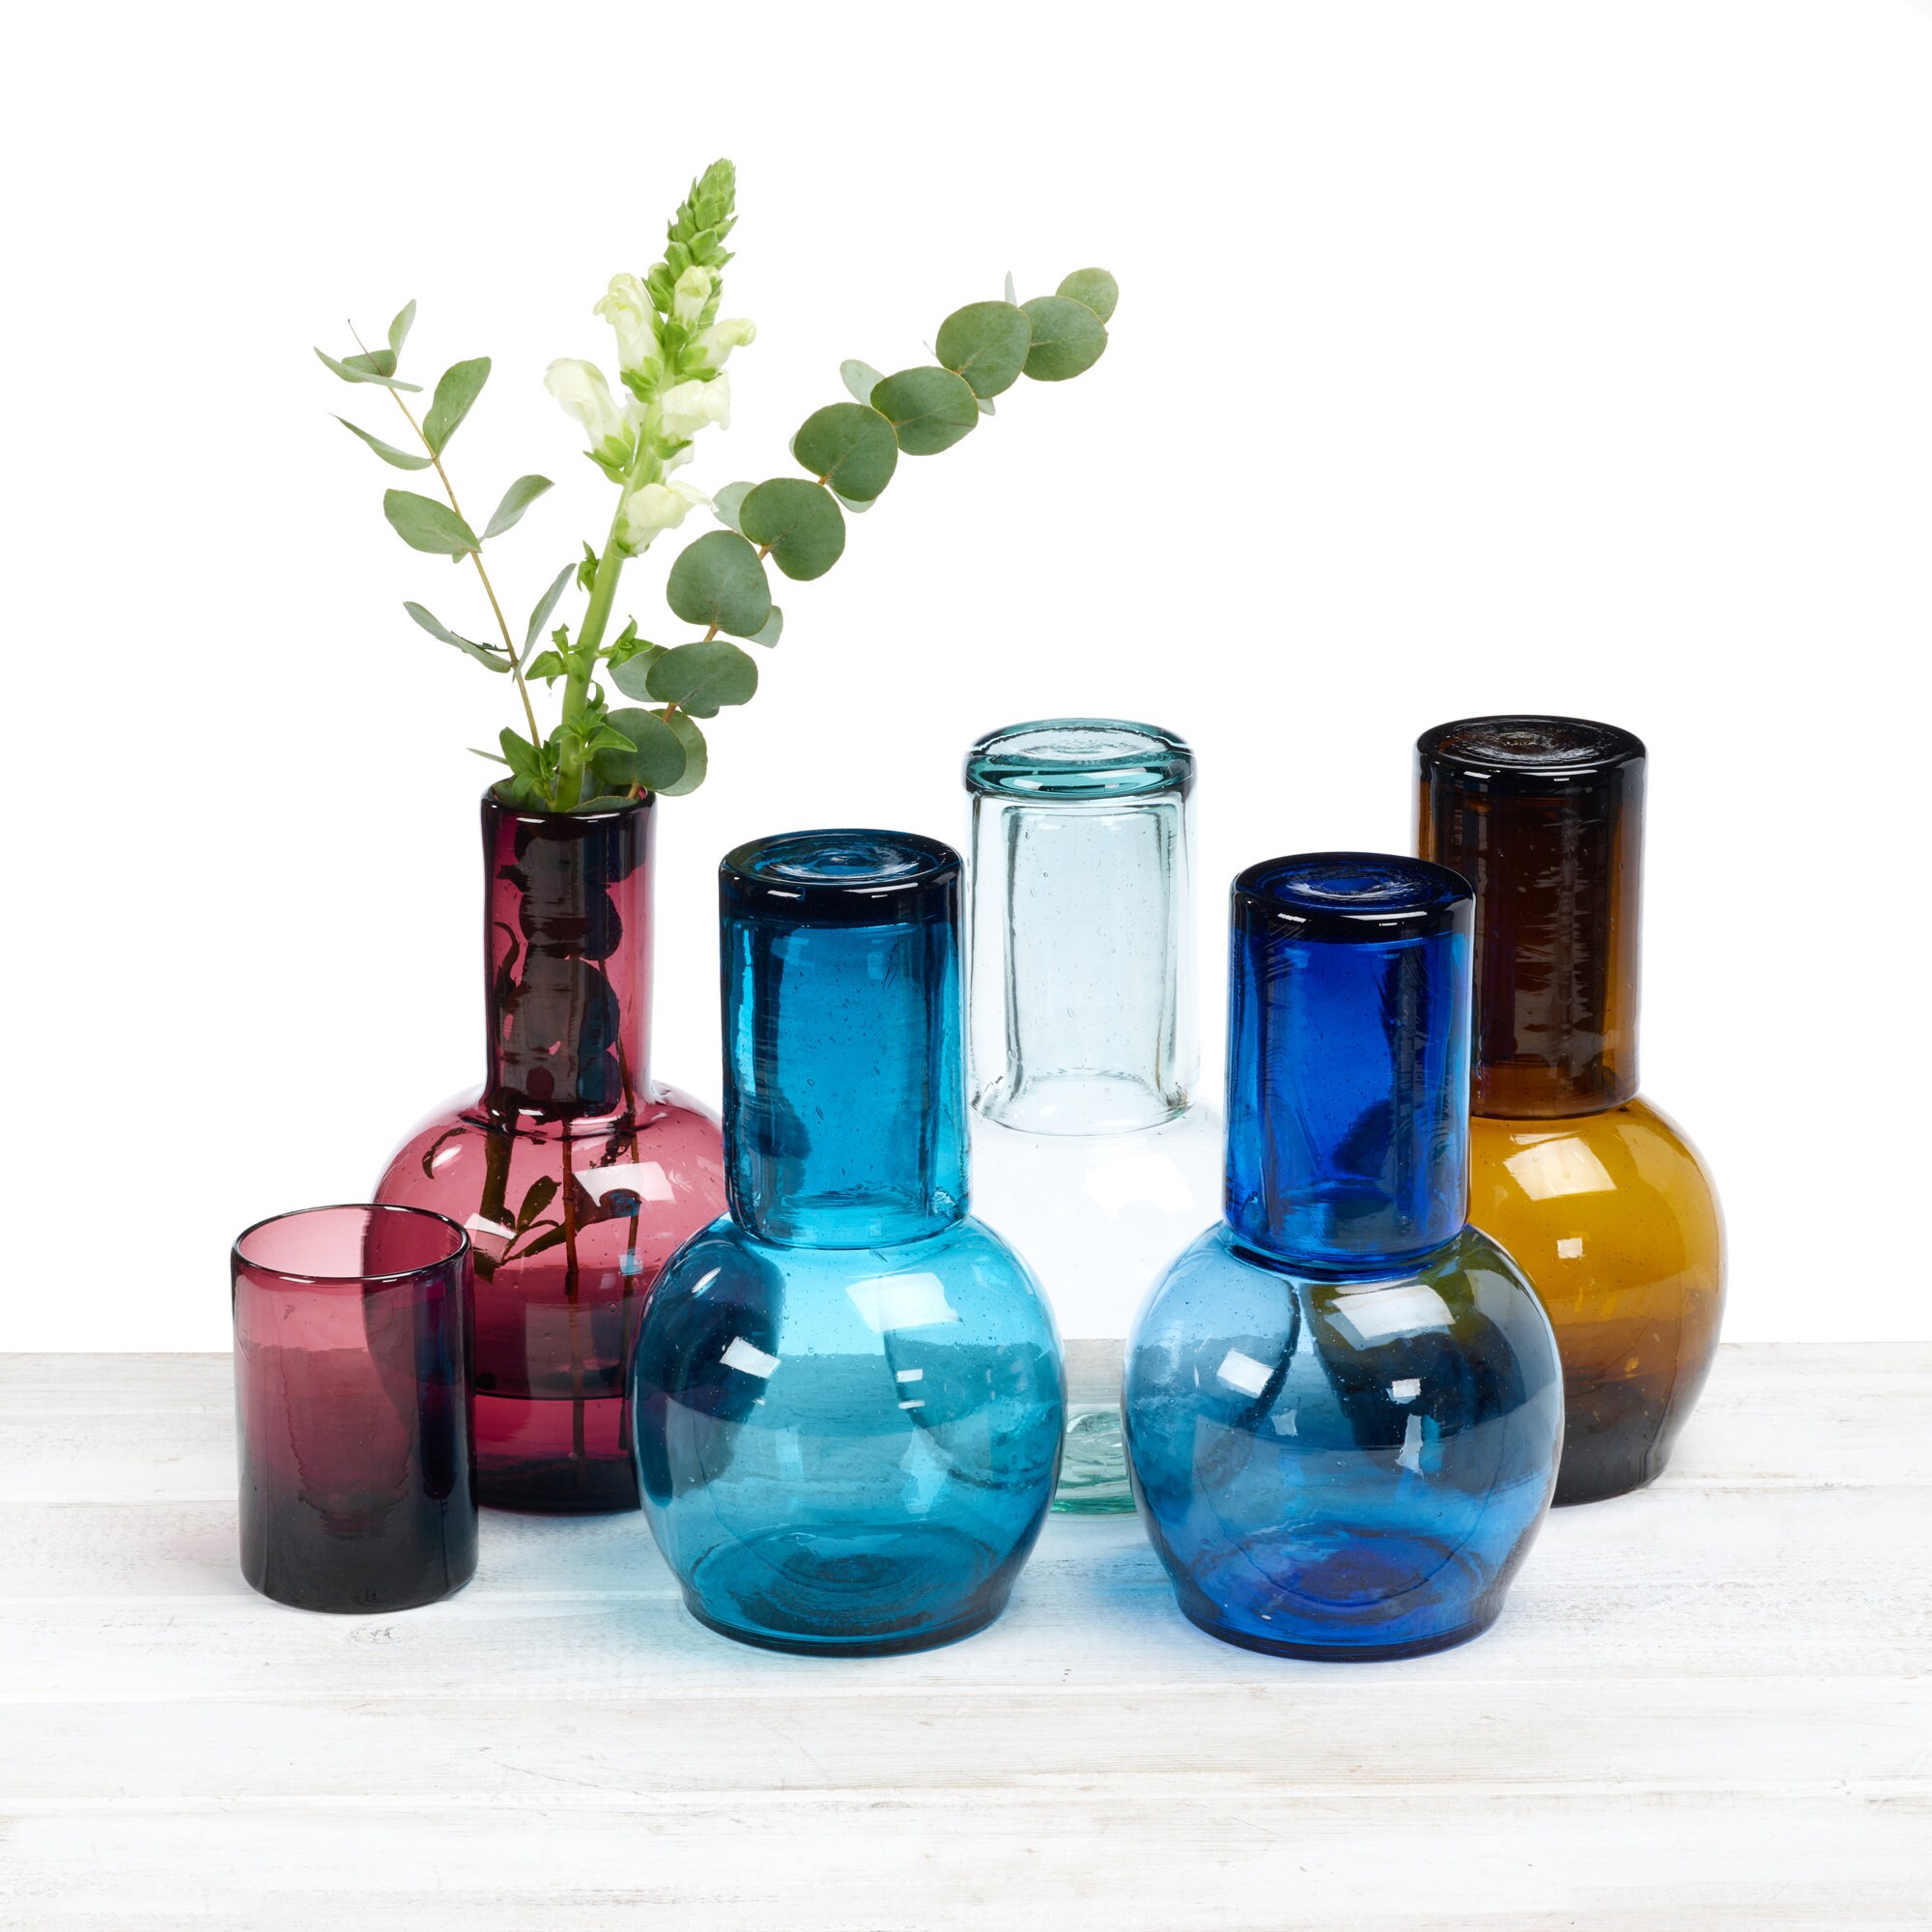 Aqua Handblown Recycled Glass Carafe and Cup Set (Pair), 'Delicate Aqua